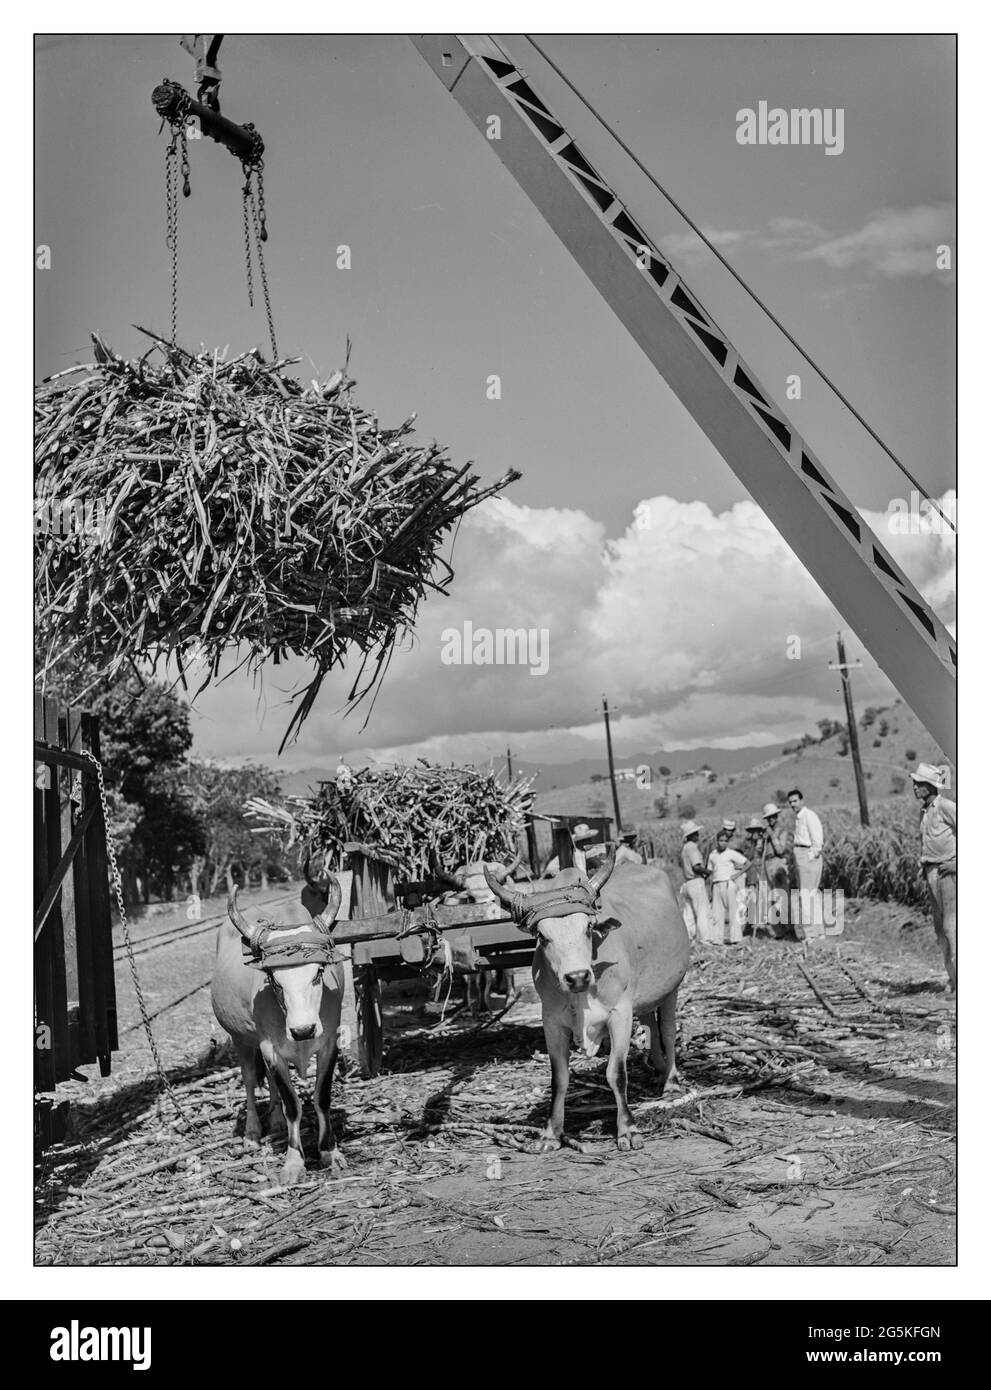 ZUCKERROHR Guanica aus den 40er Jahren, Puerto Rico. Laden von Zuckerrohr vom Ochsenkarren zum Eisenbahnwagen, um zur Zuckerfabrik gebracht zu werden Arbeiter im Lebensmittelbereich Jack Delano Fotograf 1942. Januar Zweiten Weltkrieg Puerto Rico - Ponce Municipality - Guanica Stockfoto